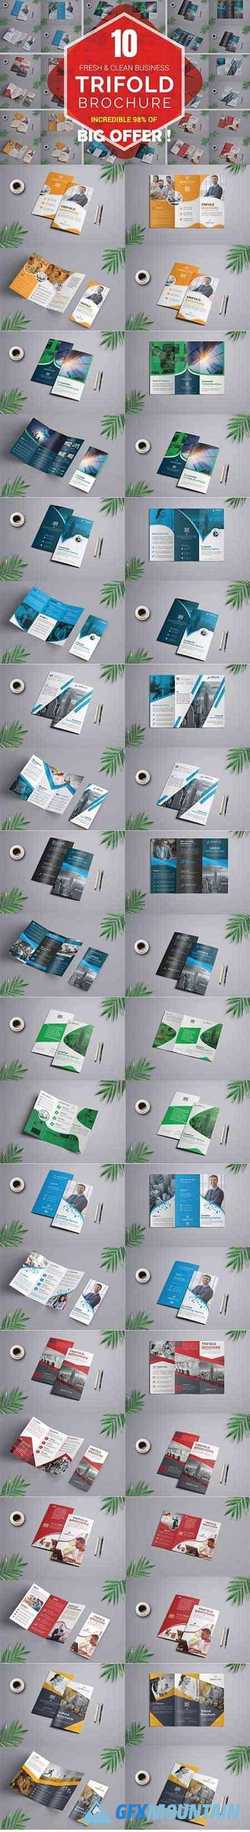 10 Corporate Trifold Brochure Bundle